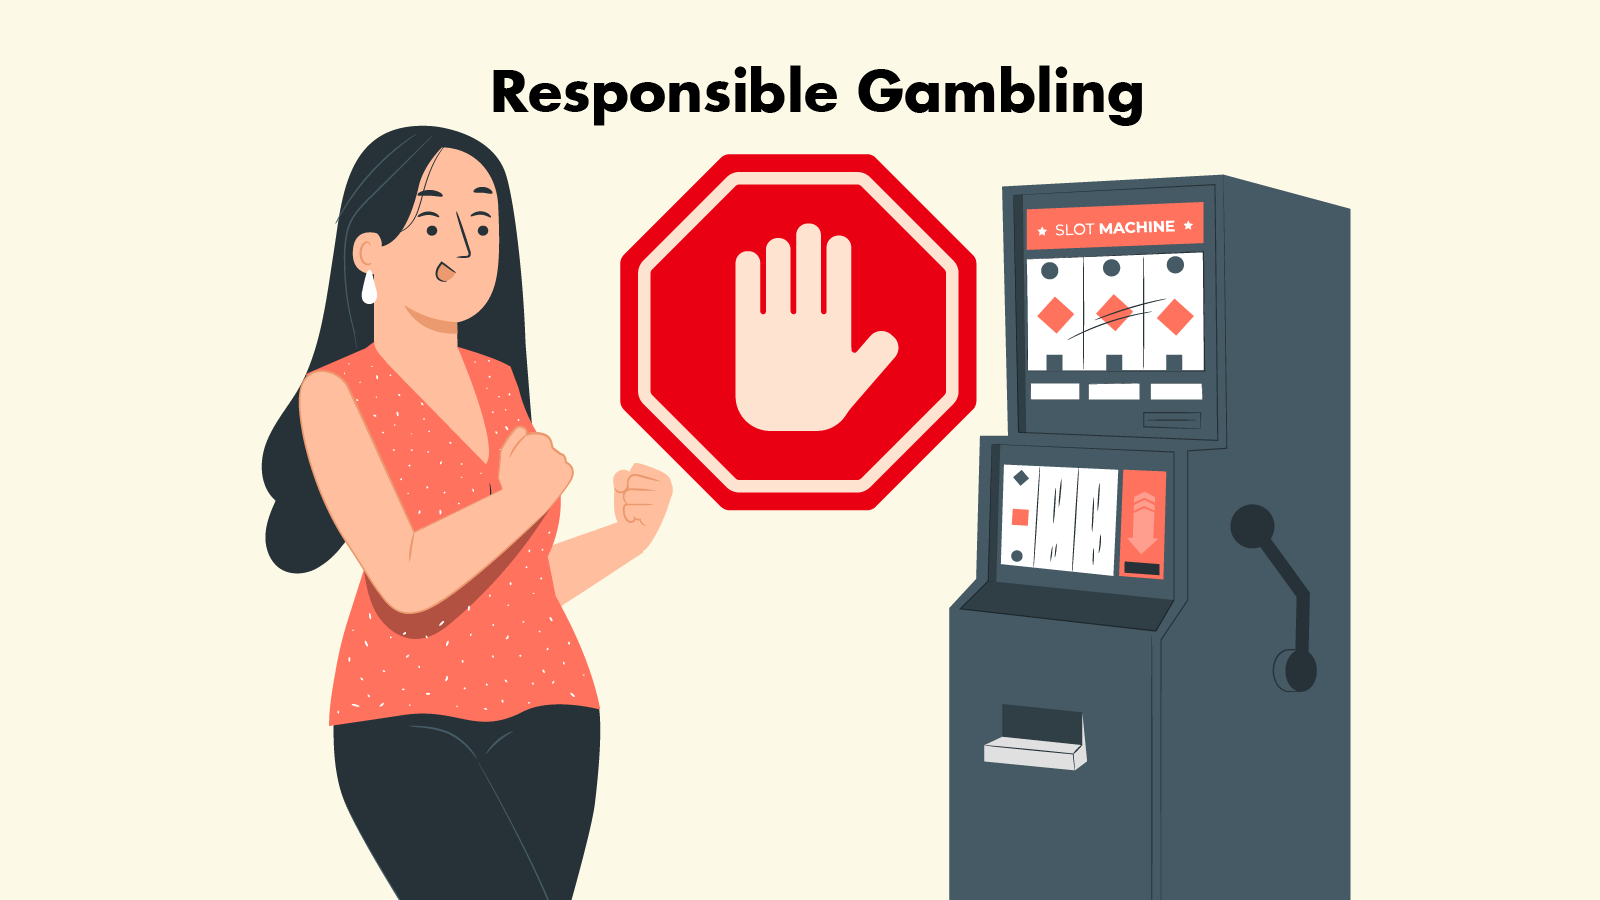 Step 5 Practice responsible gambling